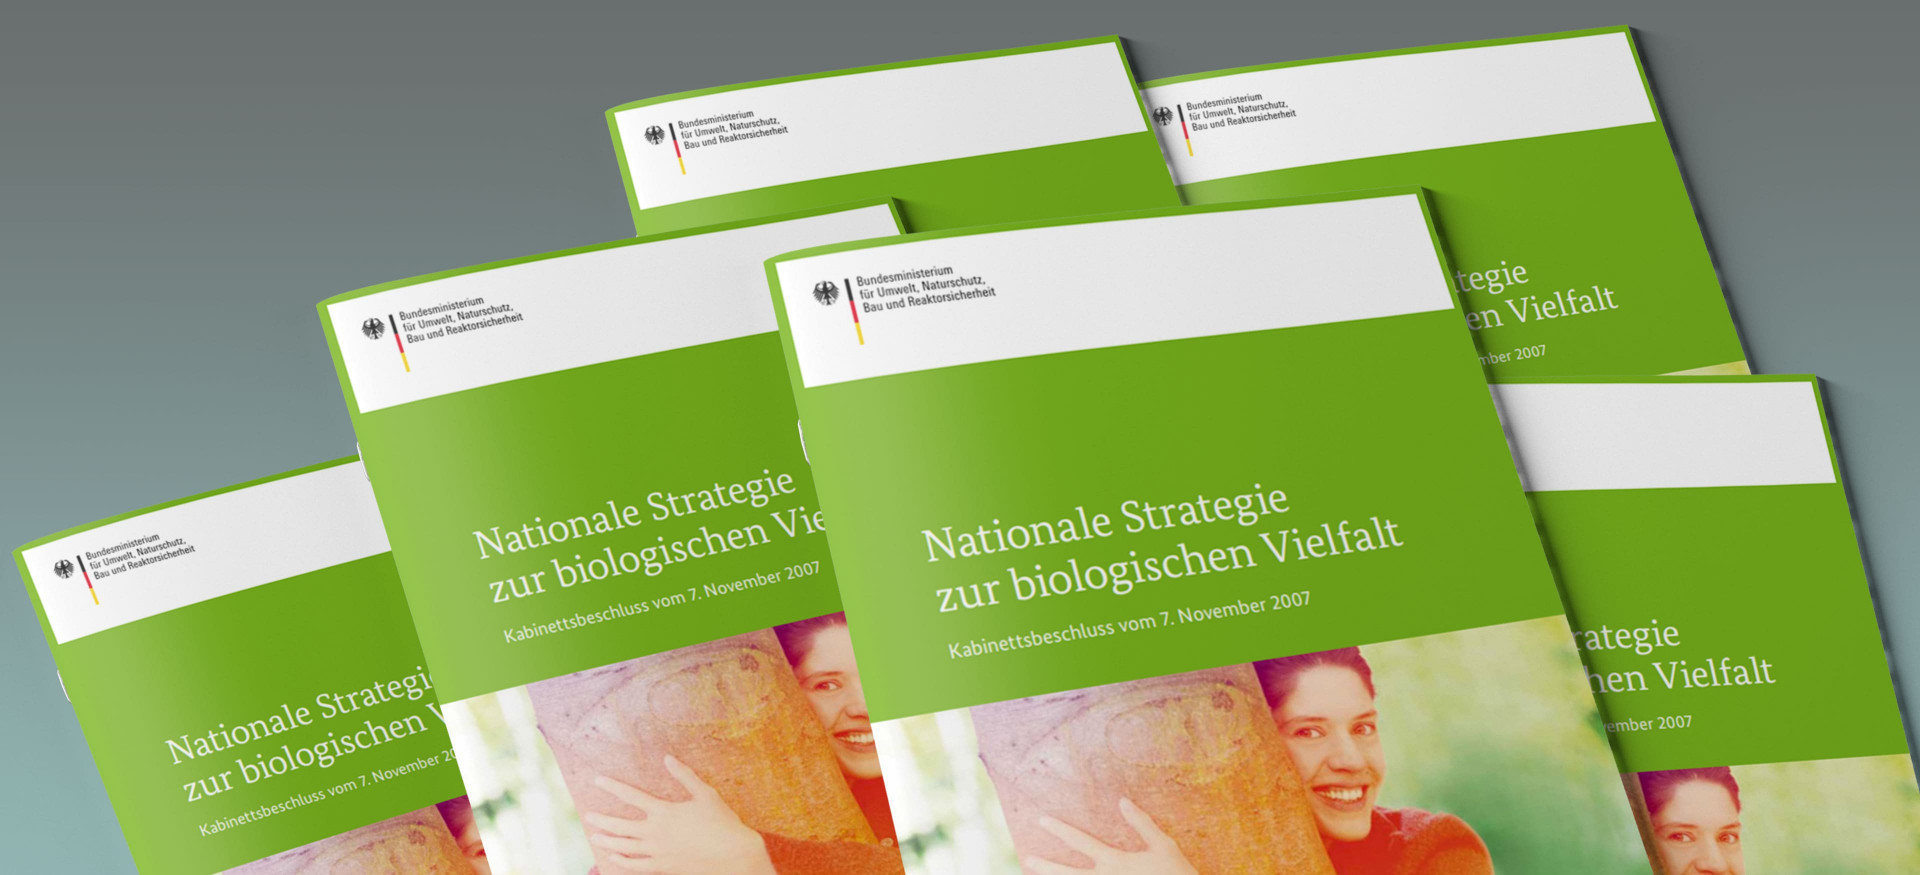 Das Bild zeigt einen Stapel Broschüren mit dem Titel "Nationale Strategie zur biologischen Vielfalt".